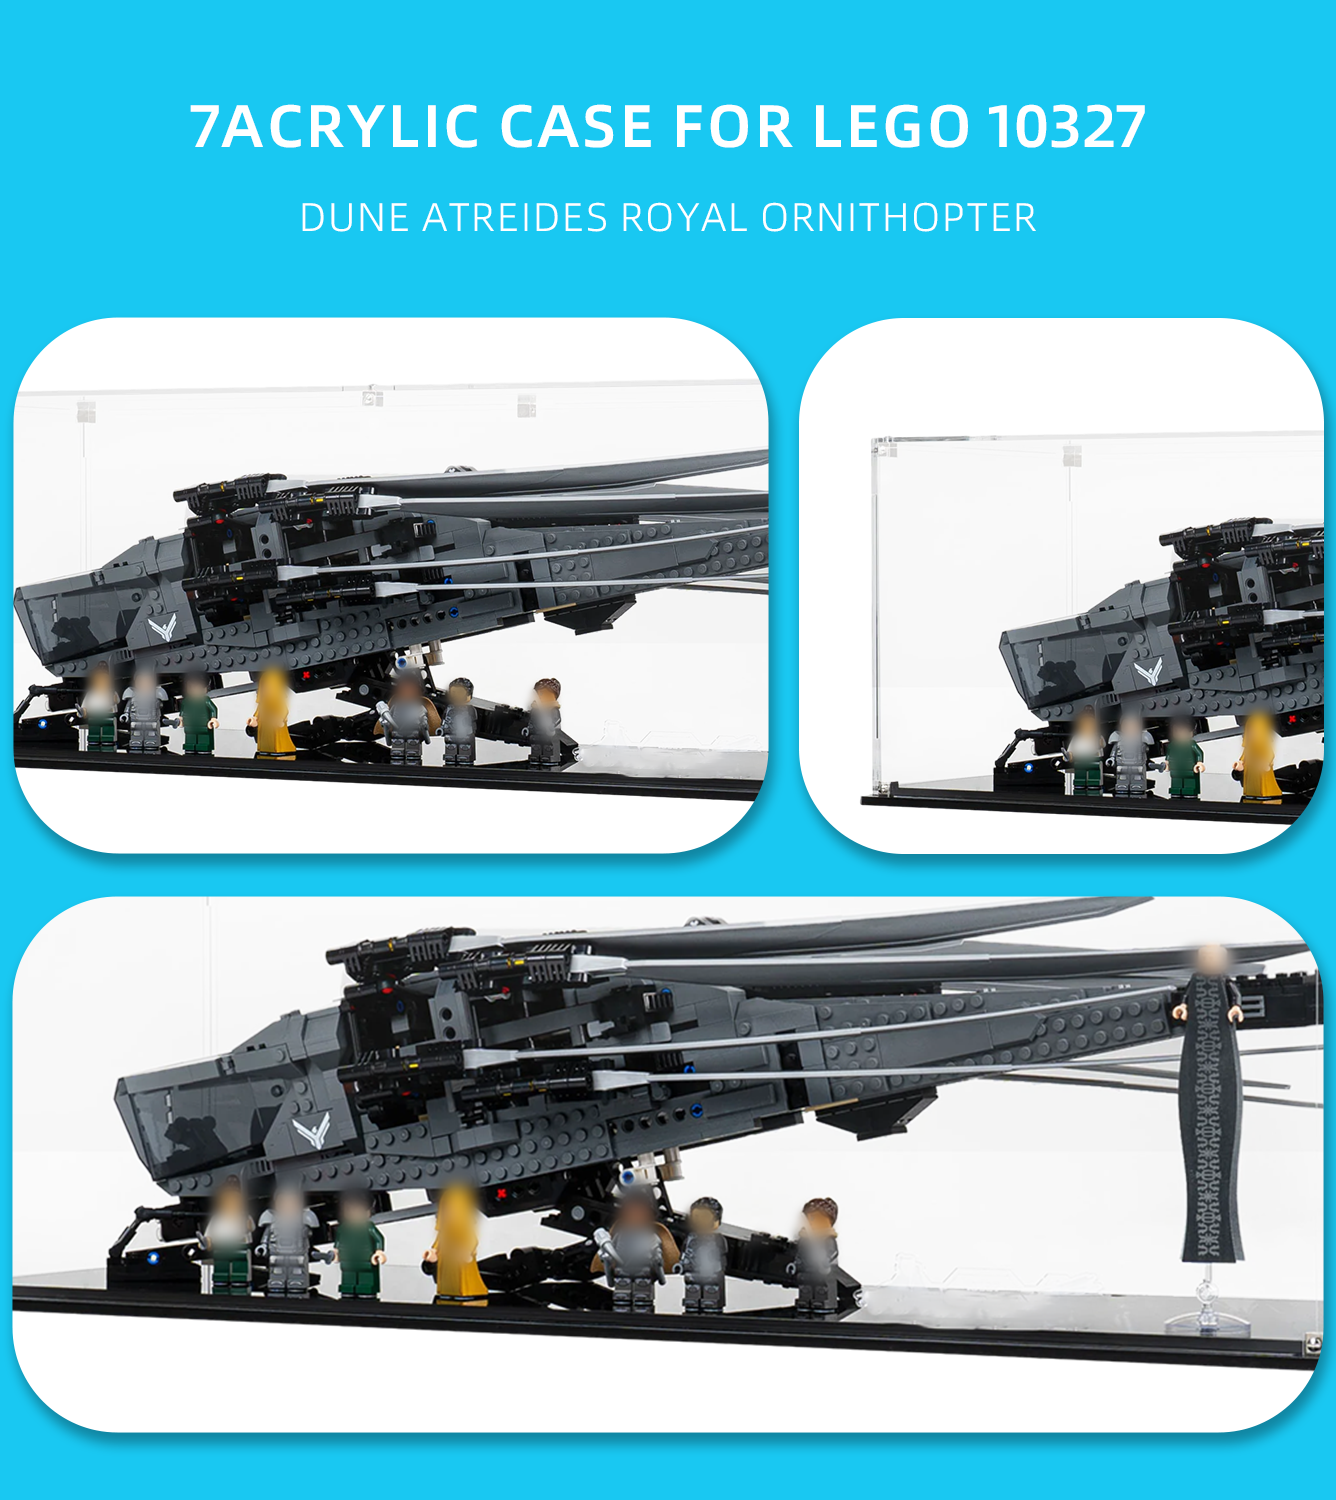 Display Case for Lego Dune Atreides Royal Ornithopter 10327